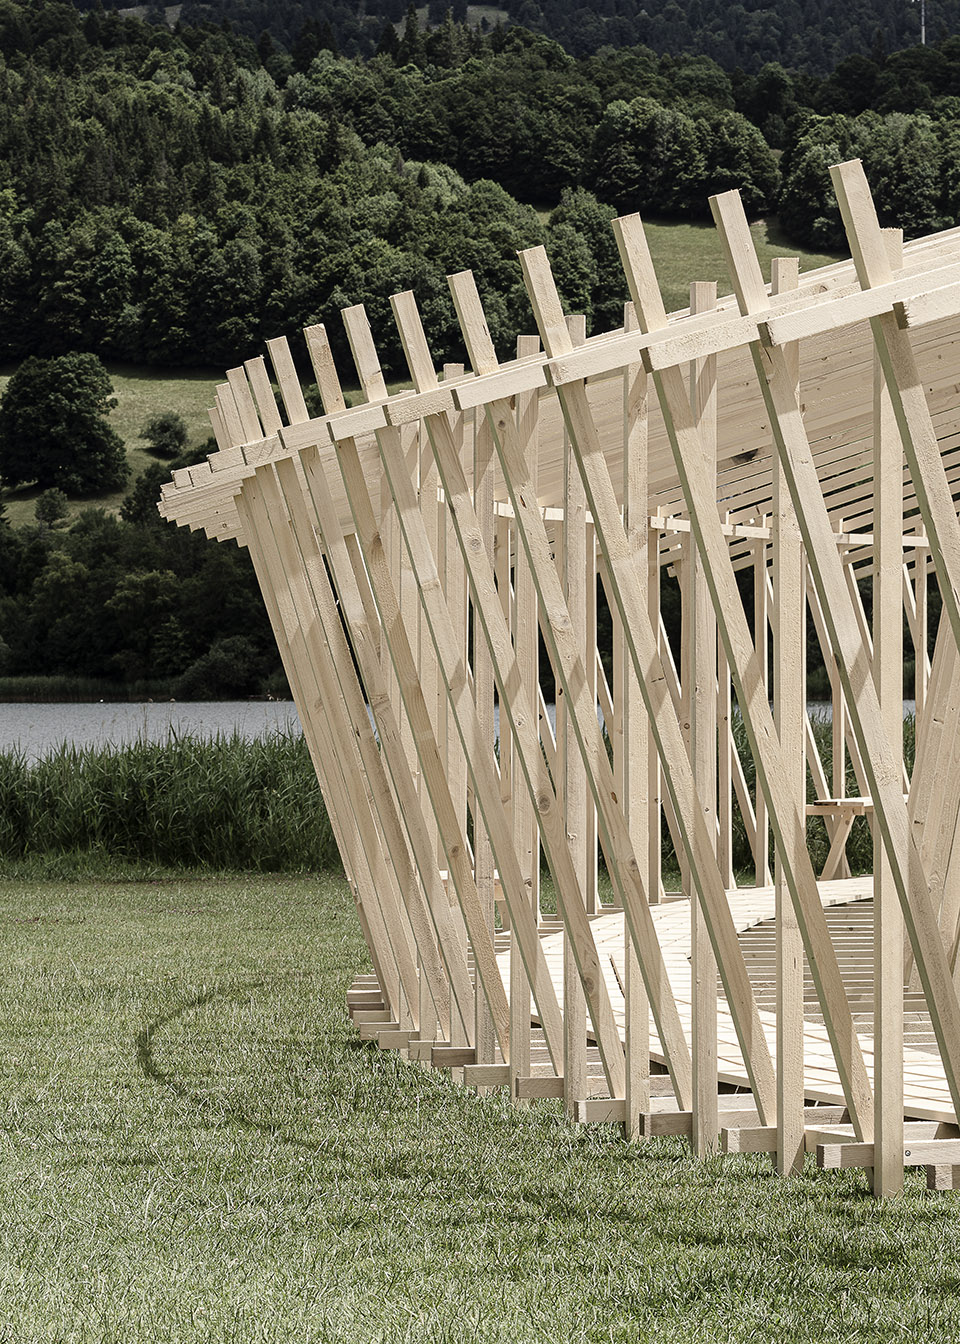 瑞士巨型木构圆环装置艺术：瞬息之环